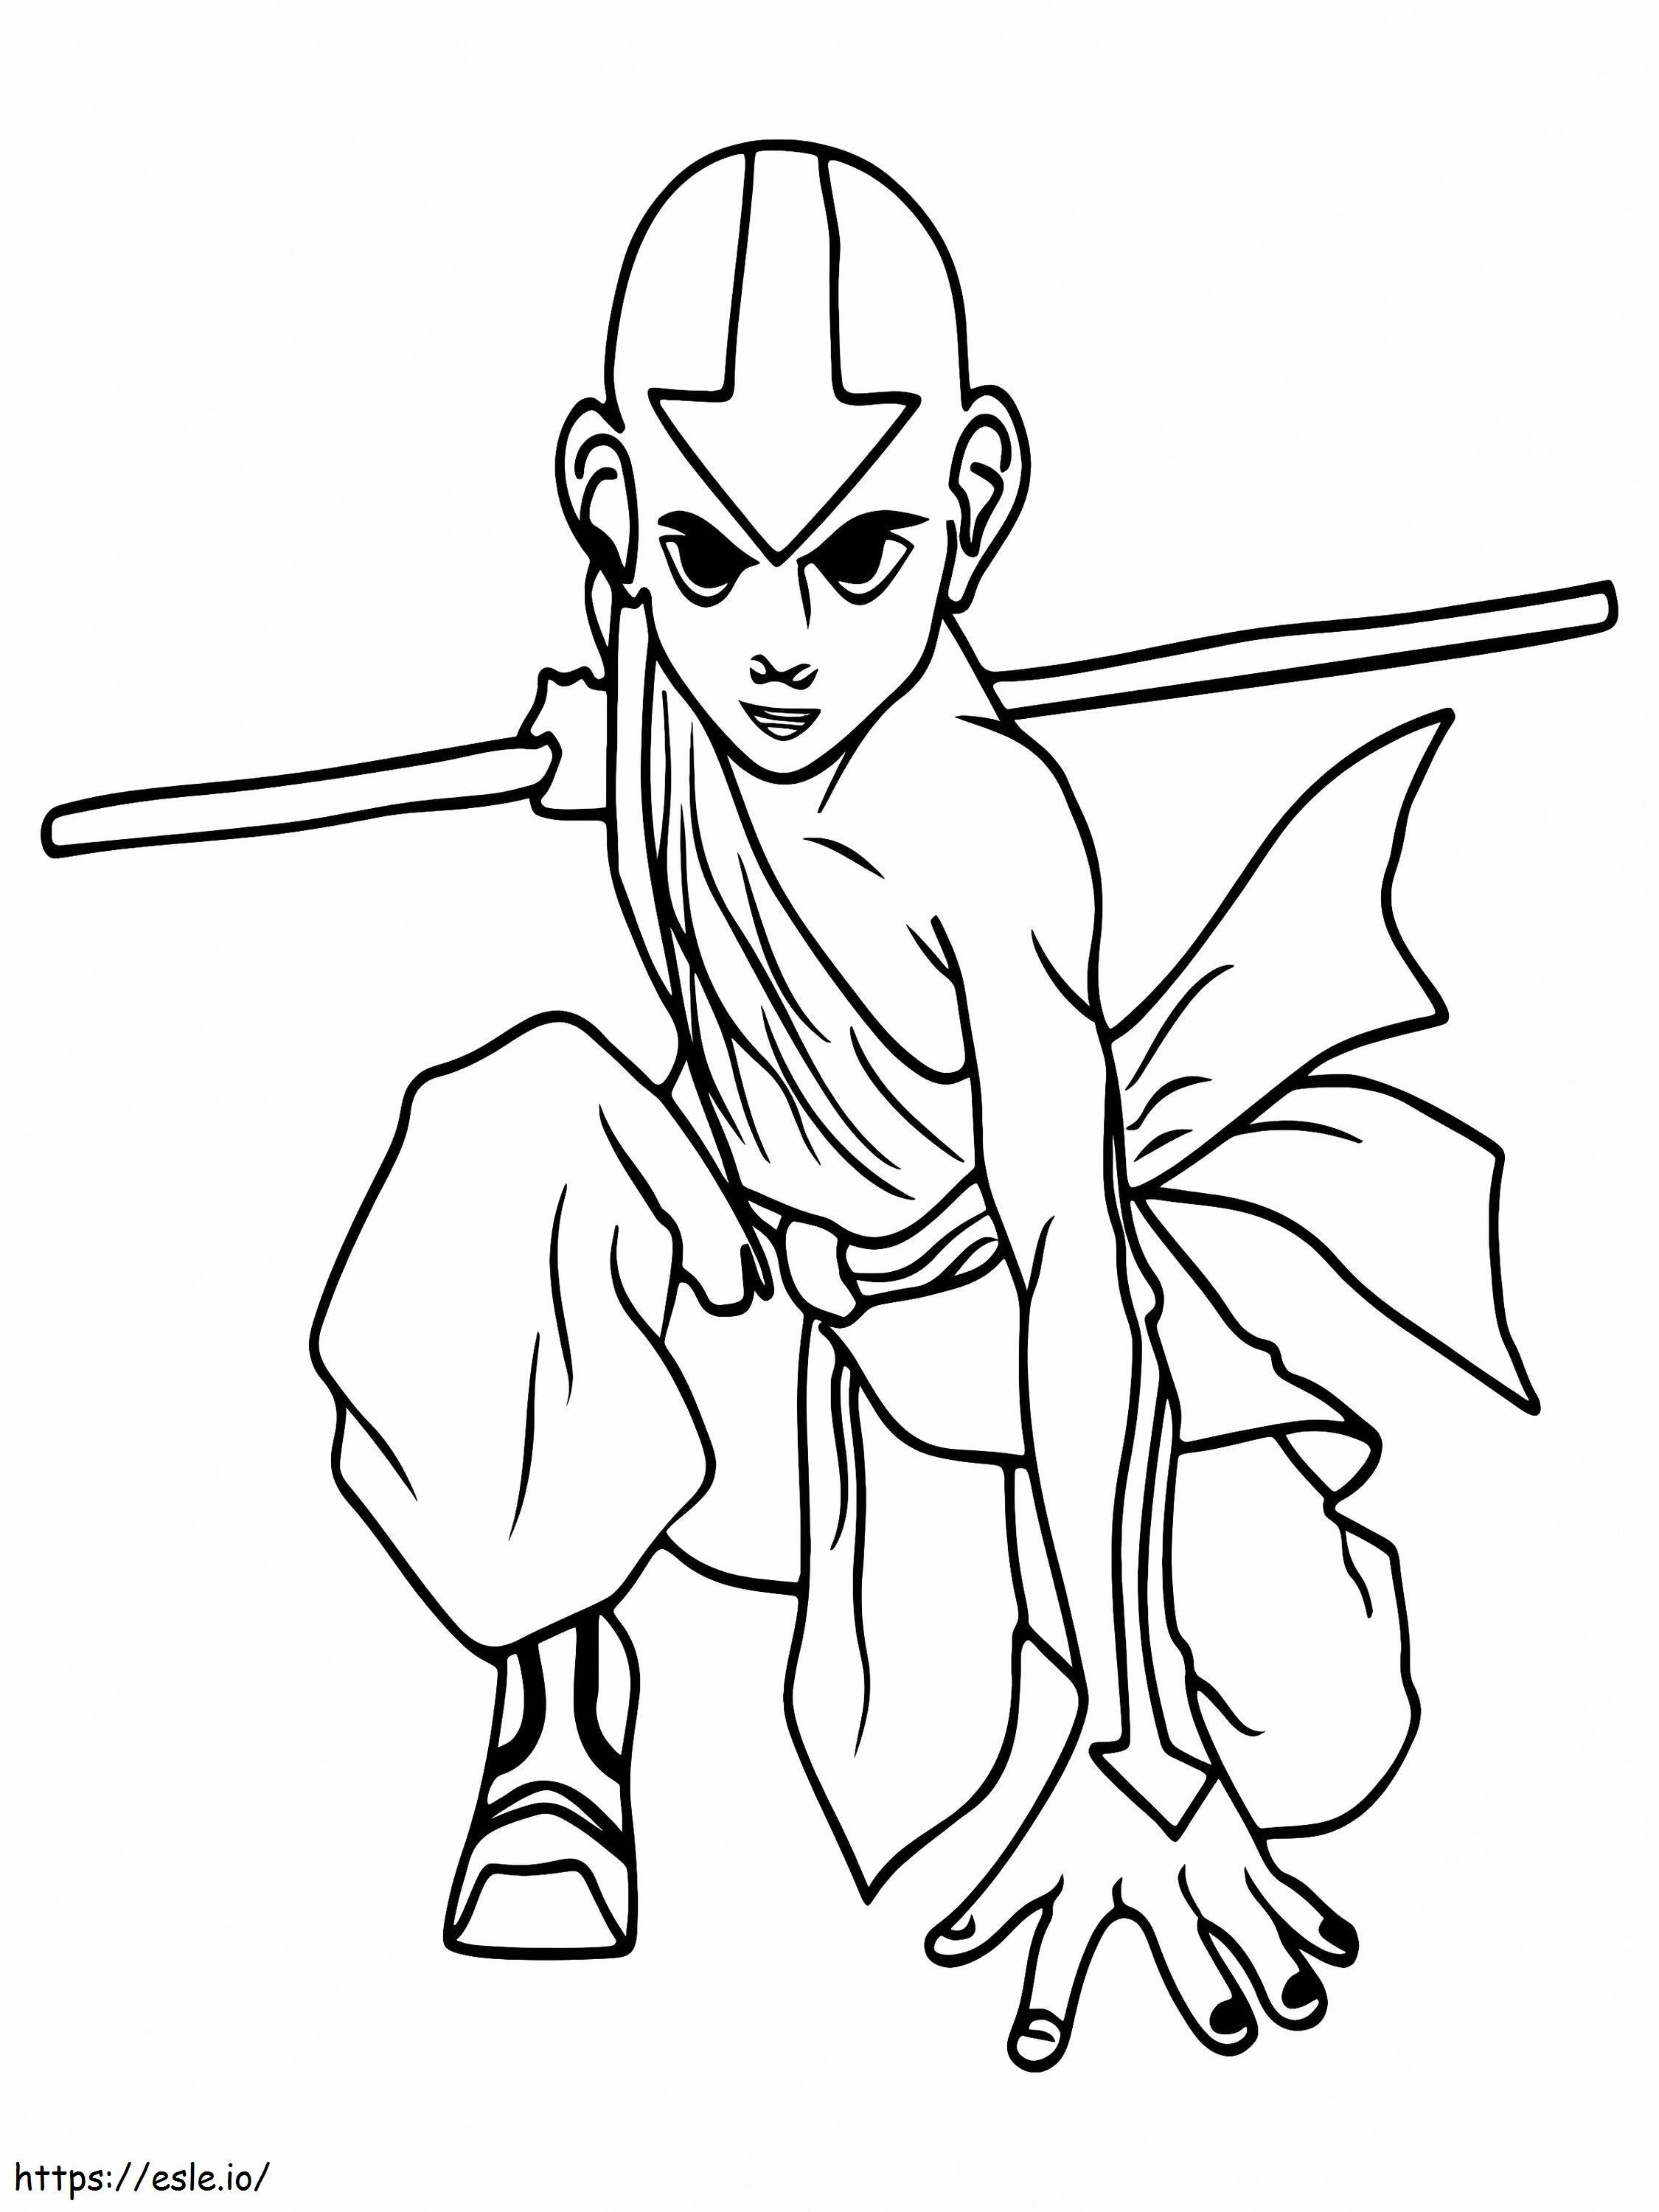 Aang walczący z Legendą Korry kolorowanka